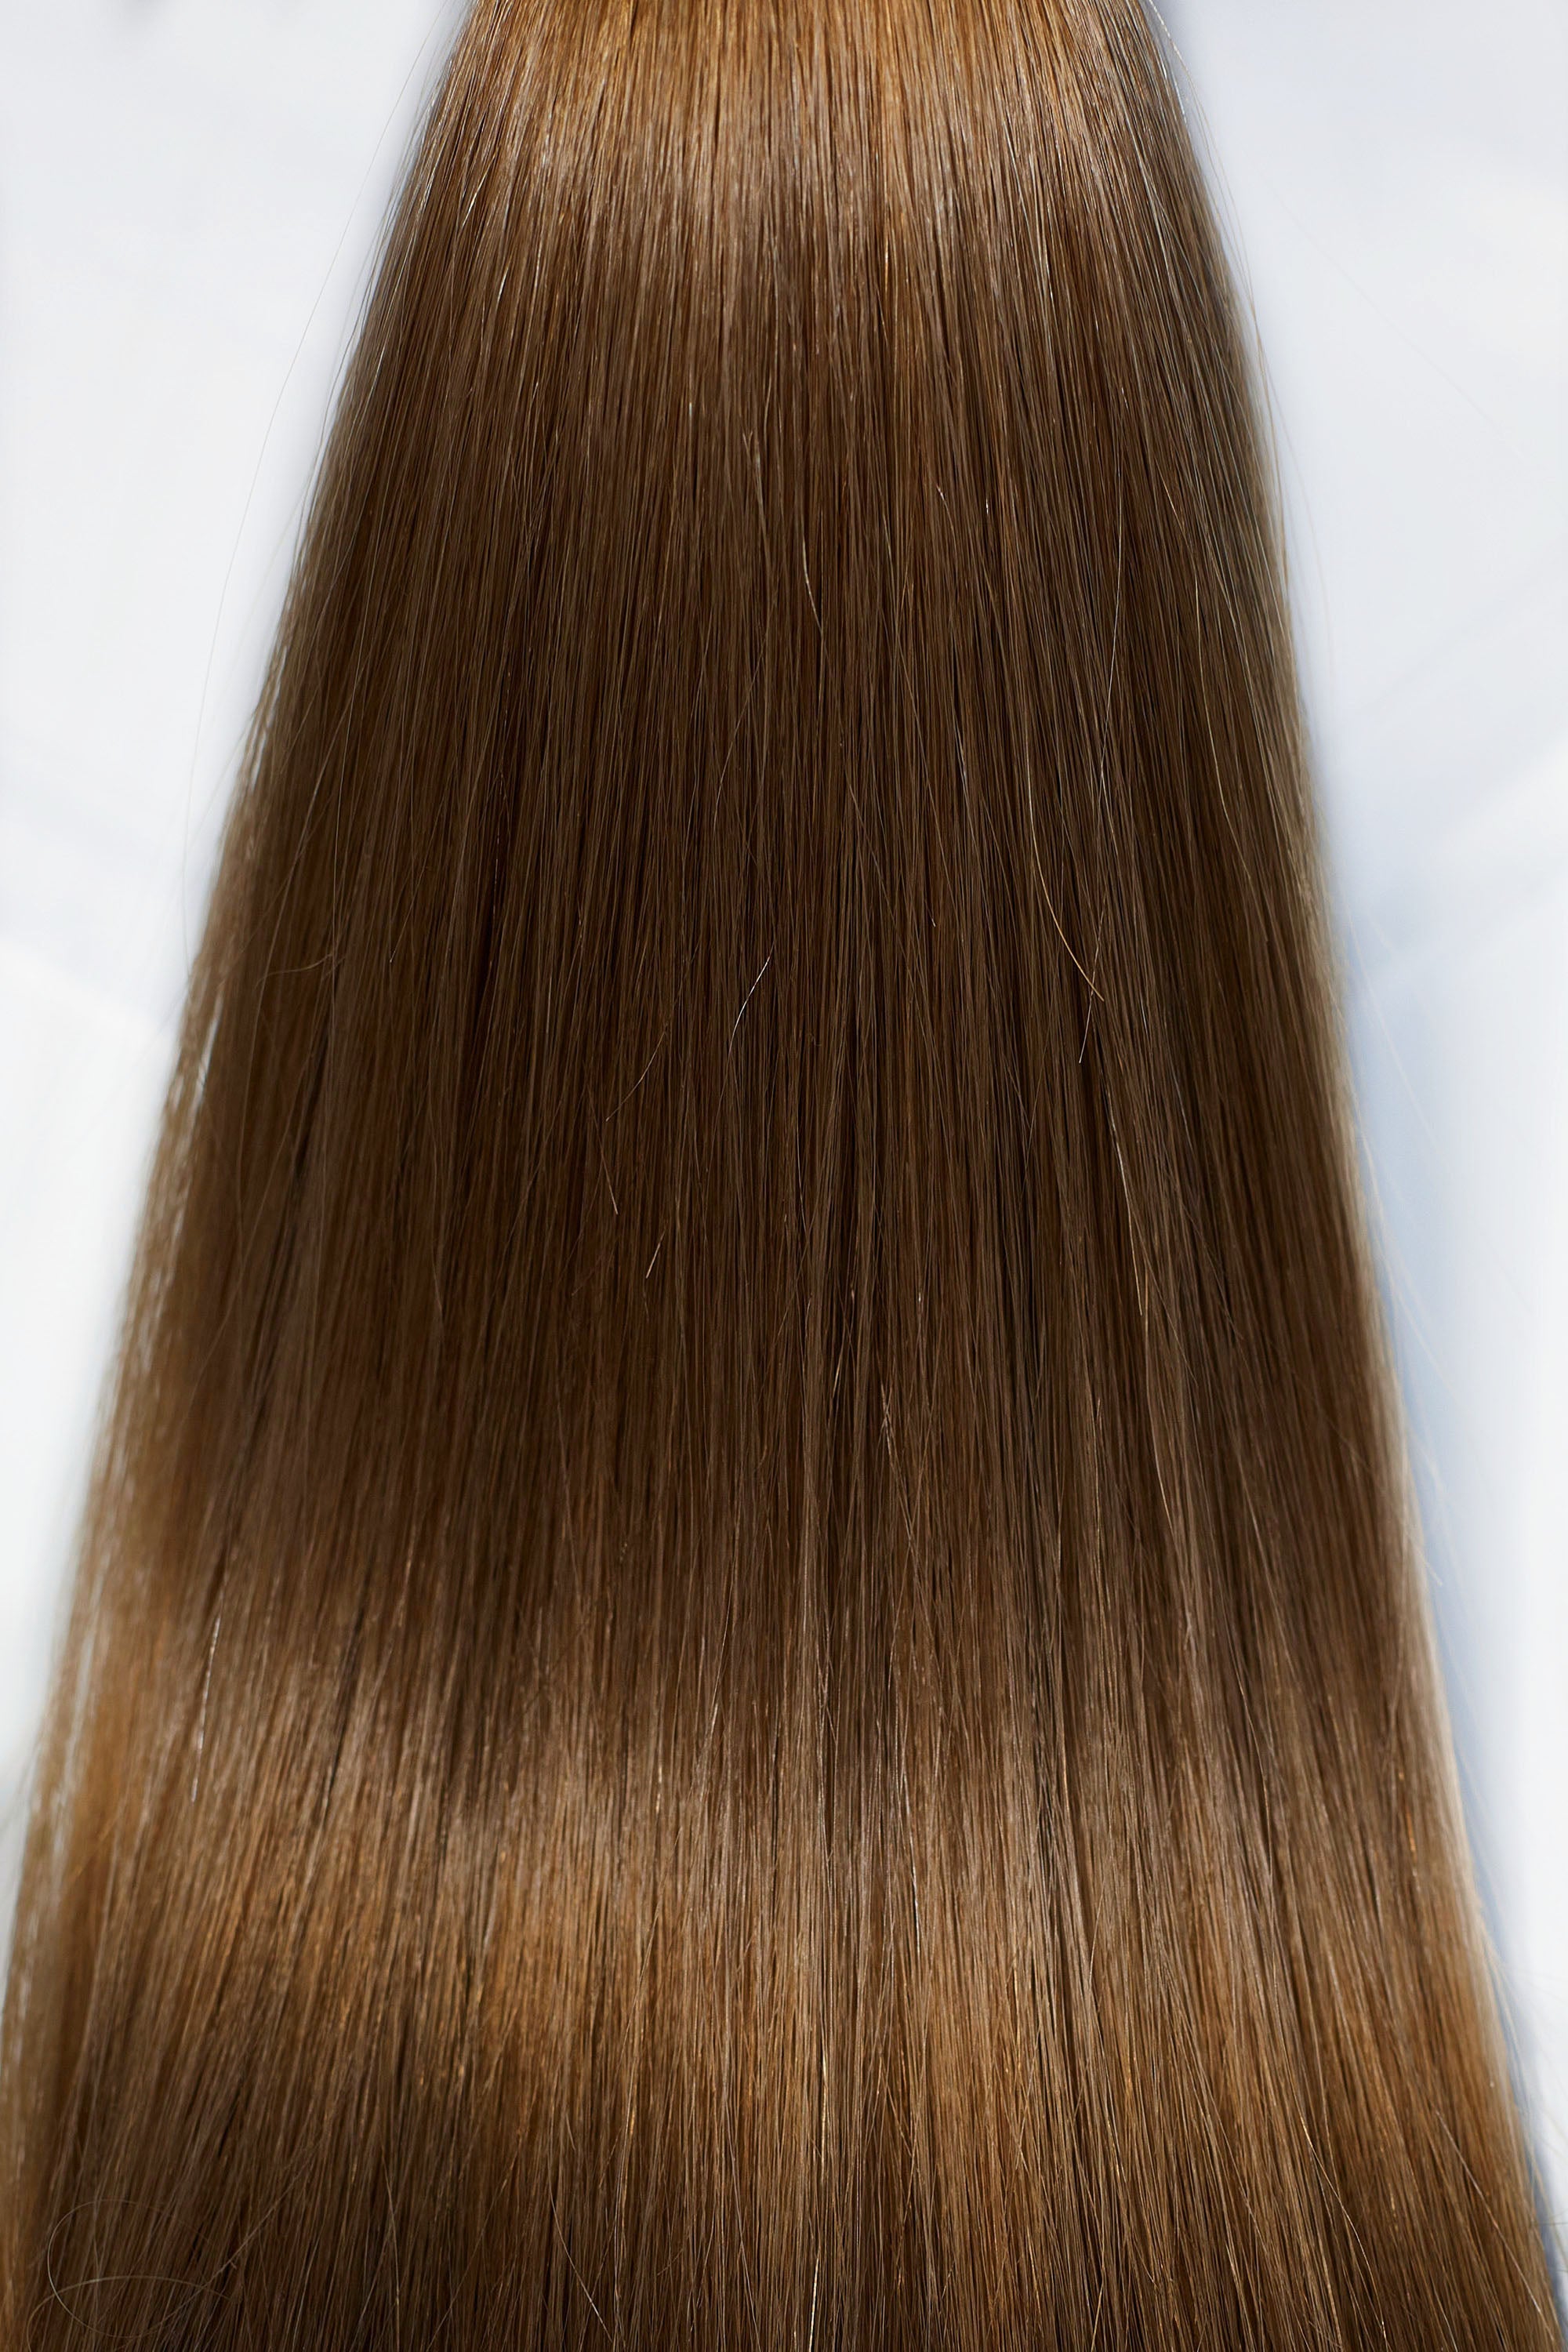 Behair professional Bulk hair "Premium" 18" (45cm) Natural Straight Chestnut #6 - 25g hair extensions